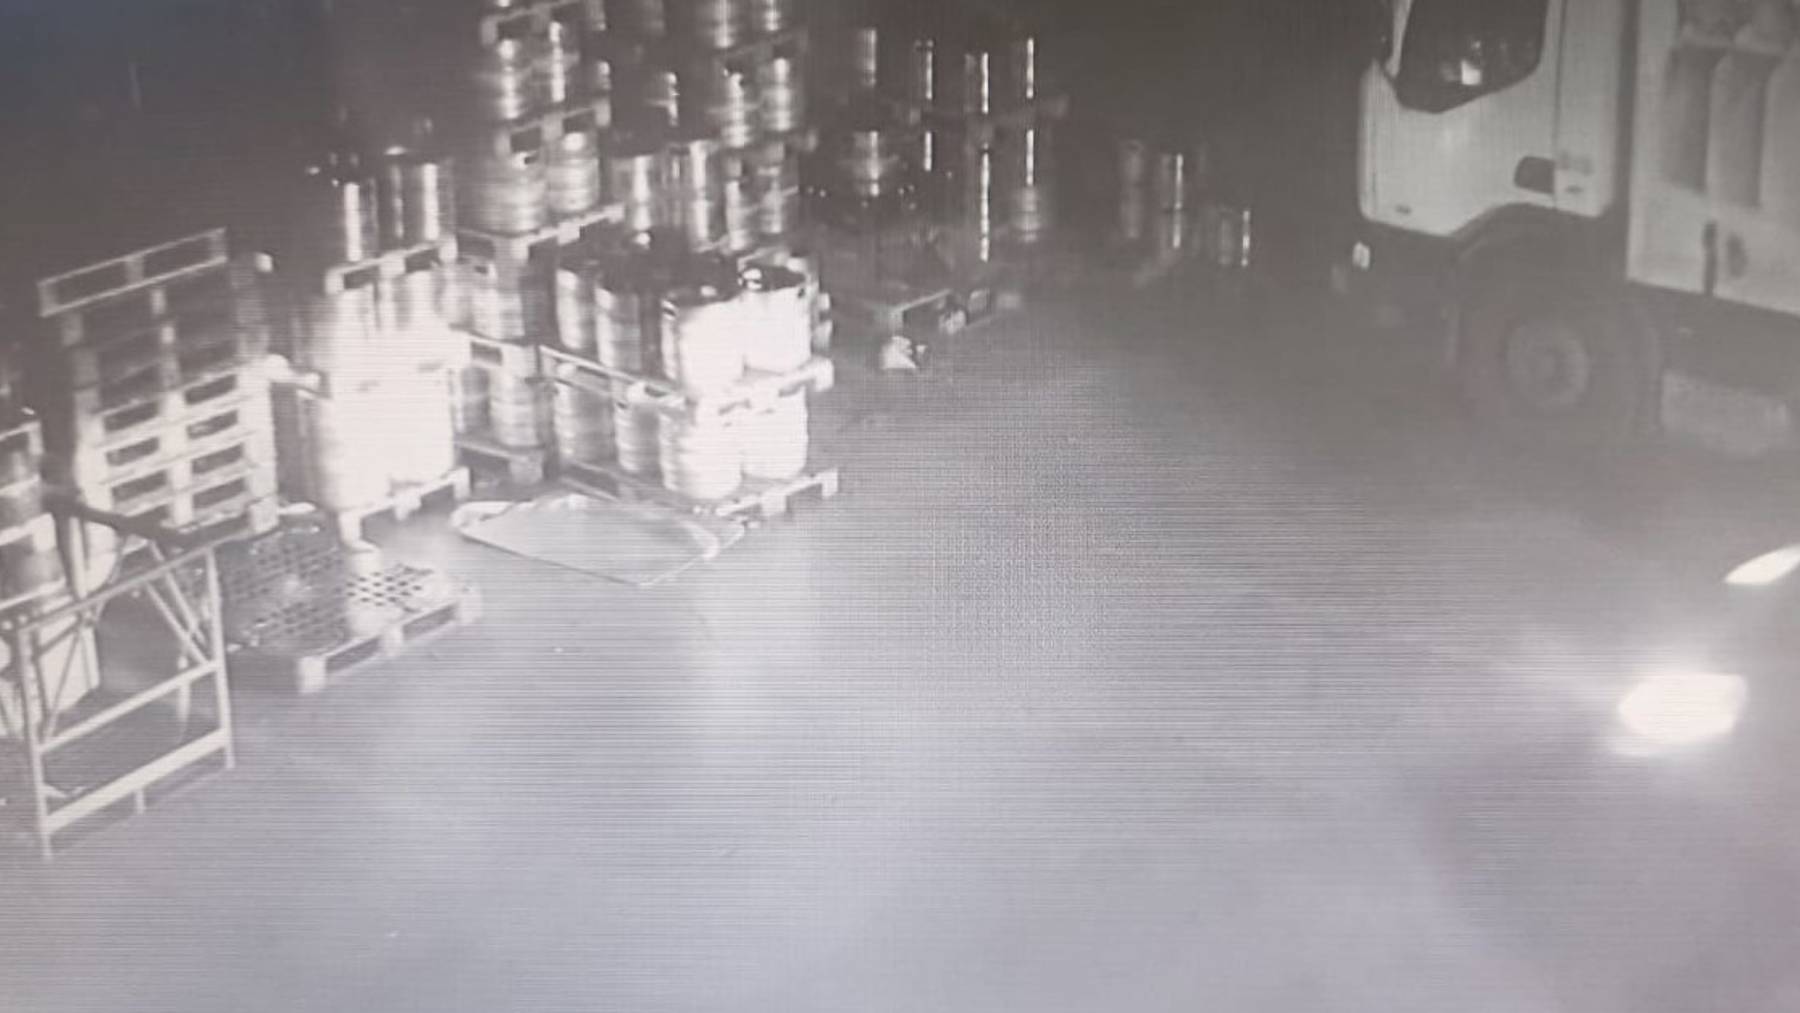 Un empleado presuntamente robó barriles de cerveza de la empresa donde trabajaba. POLICÍA NACIONAL